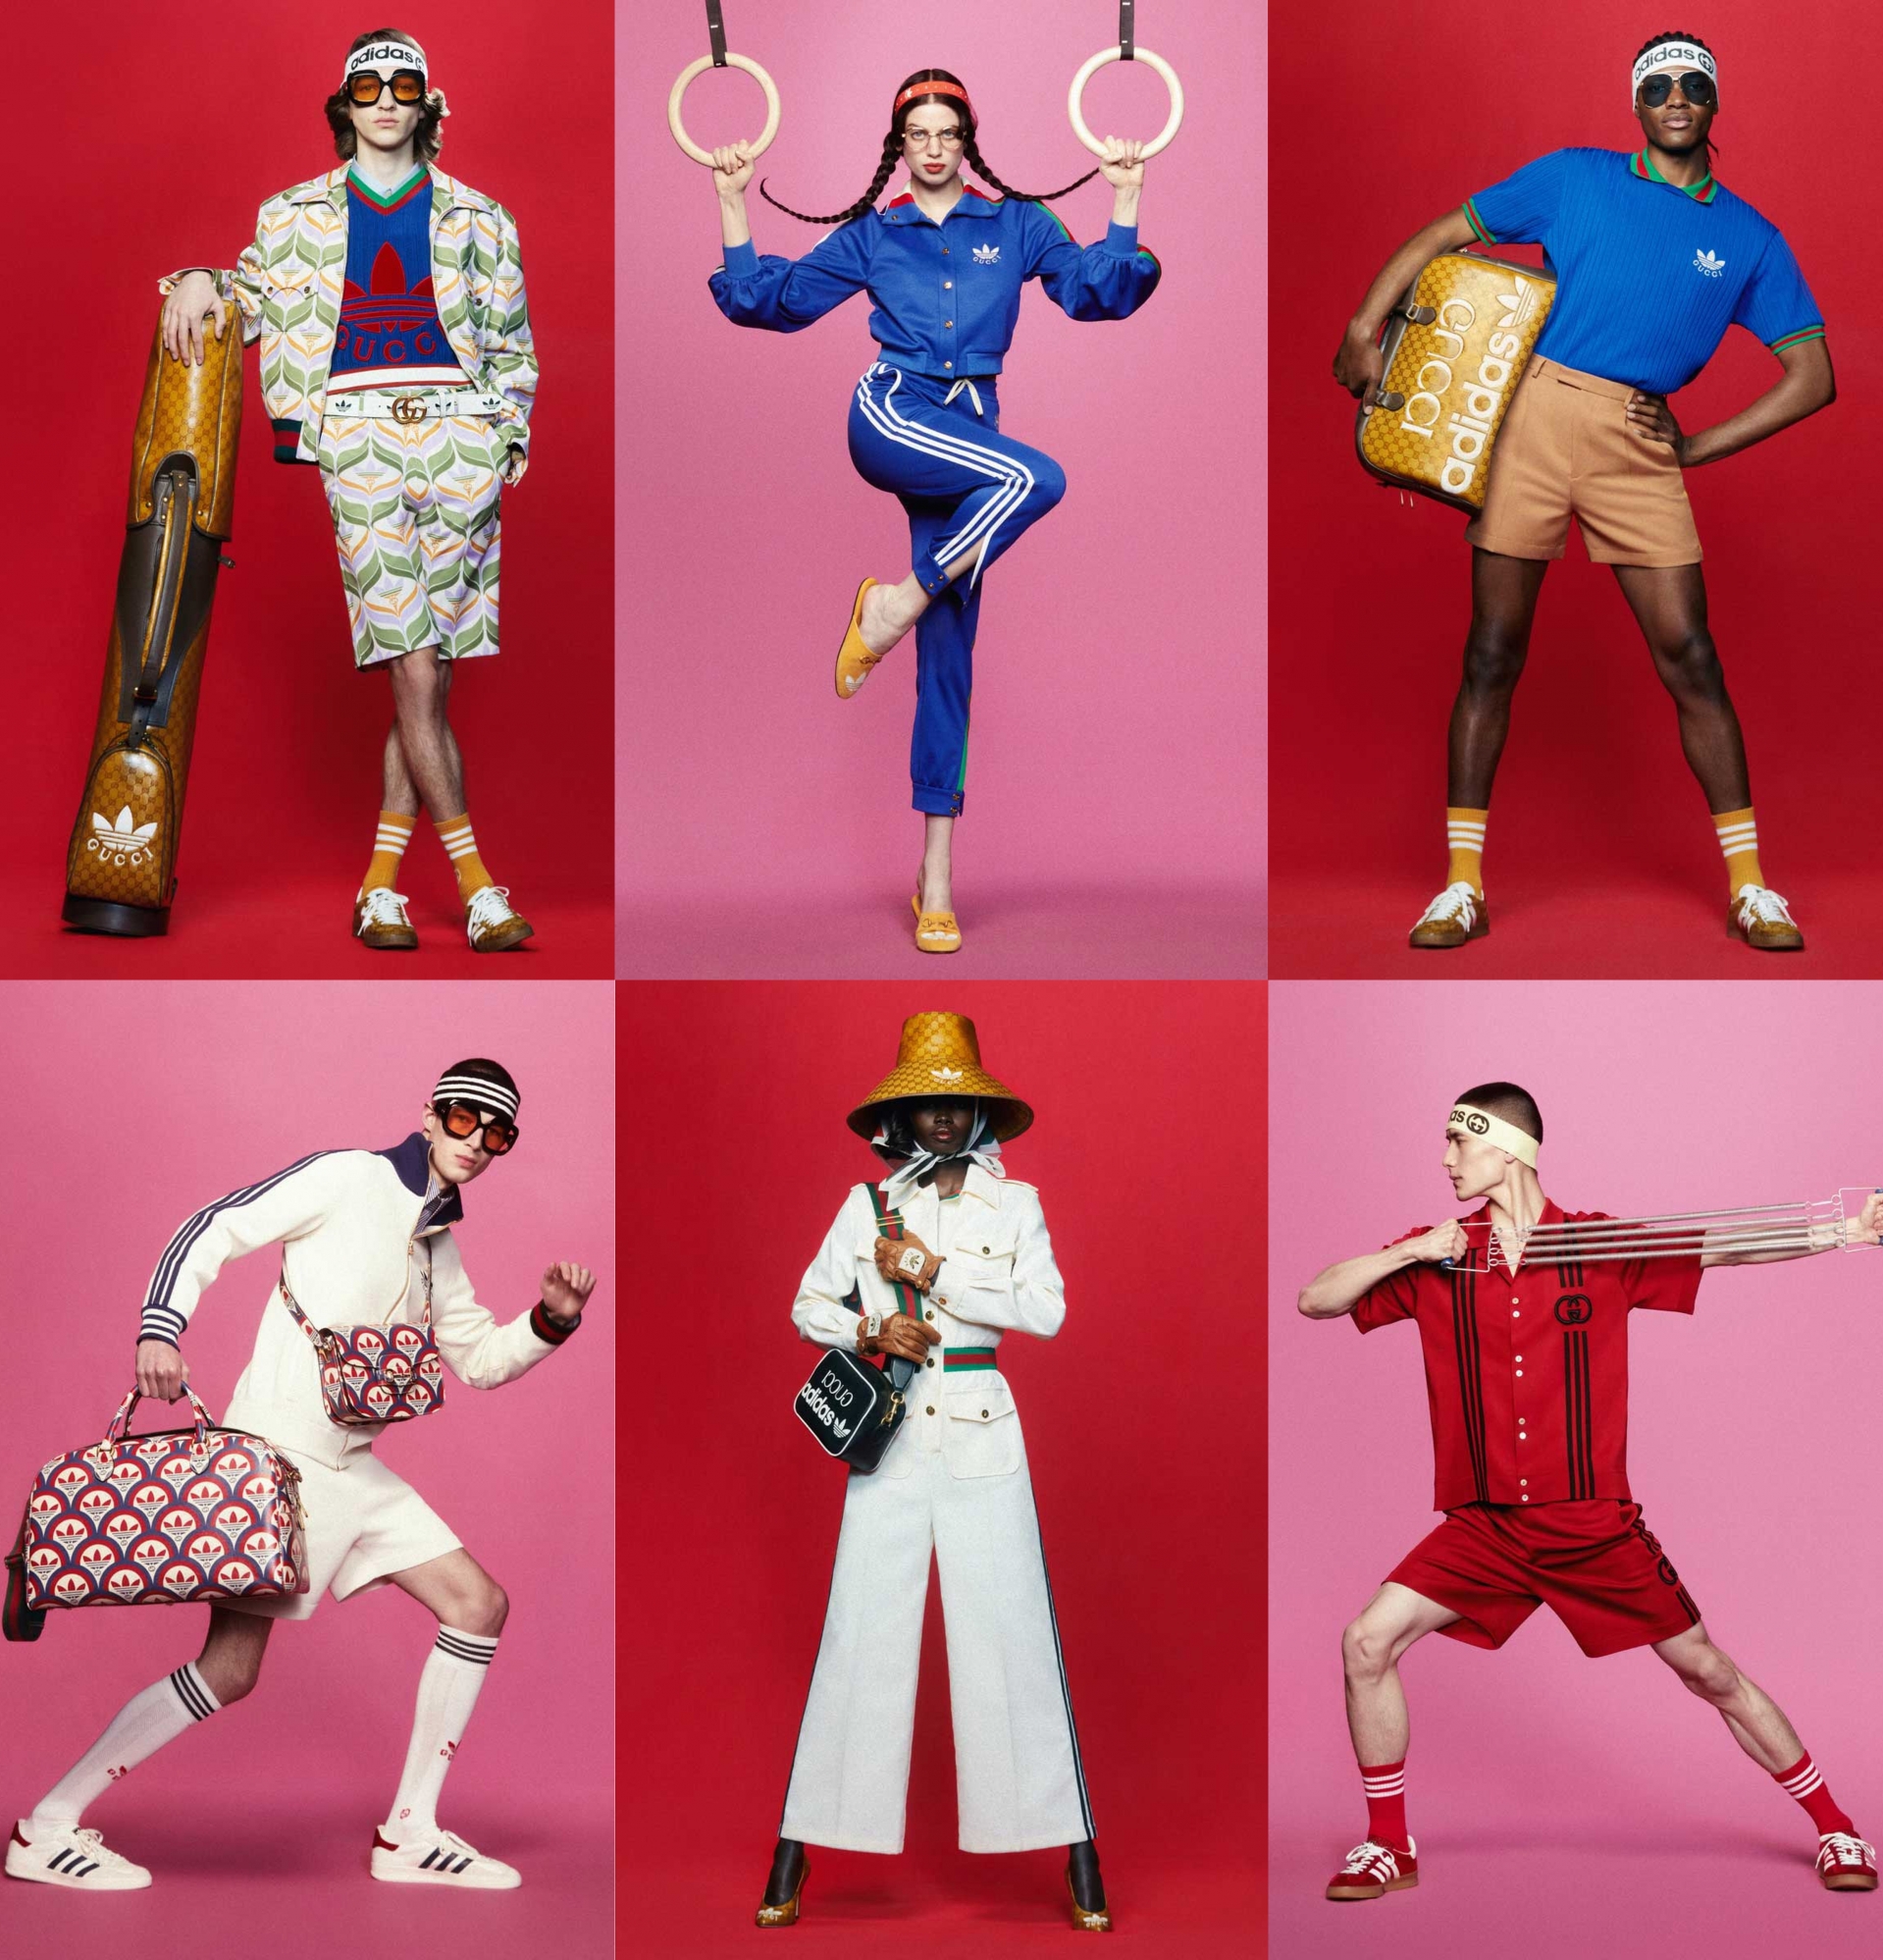 Adidas x Gucci: Khi sự cuồng nhiệt của thể thao giao thoa với những món đồ xa xỉ - Ảnh 12